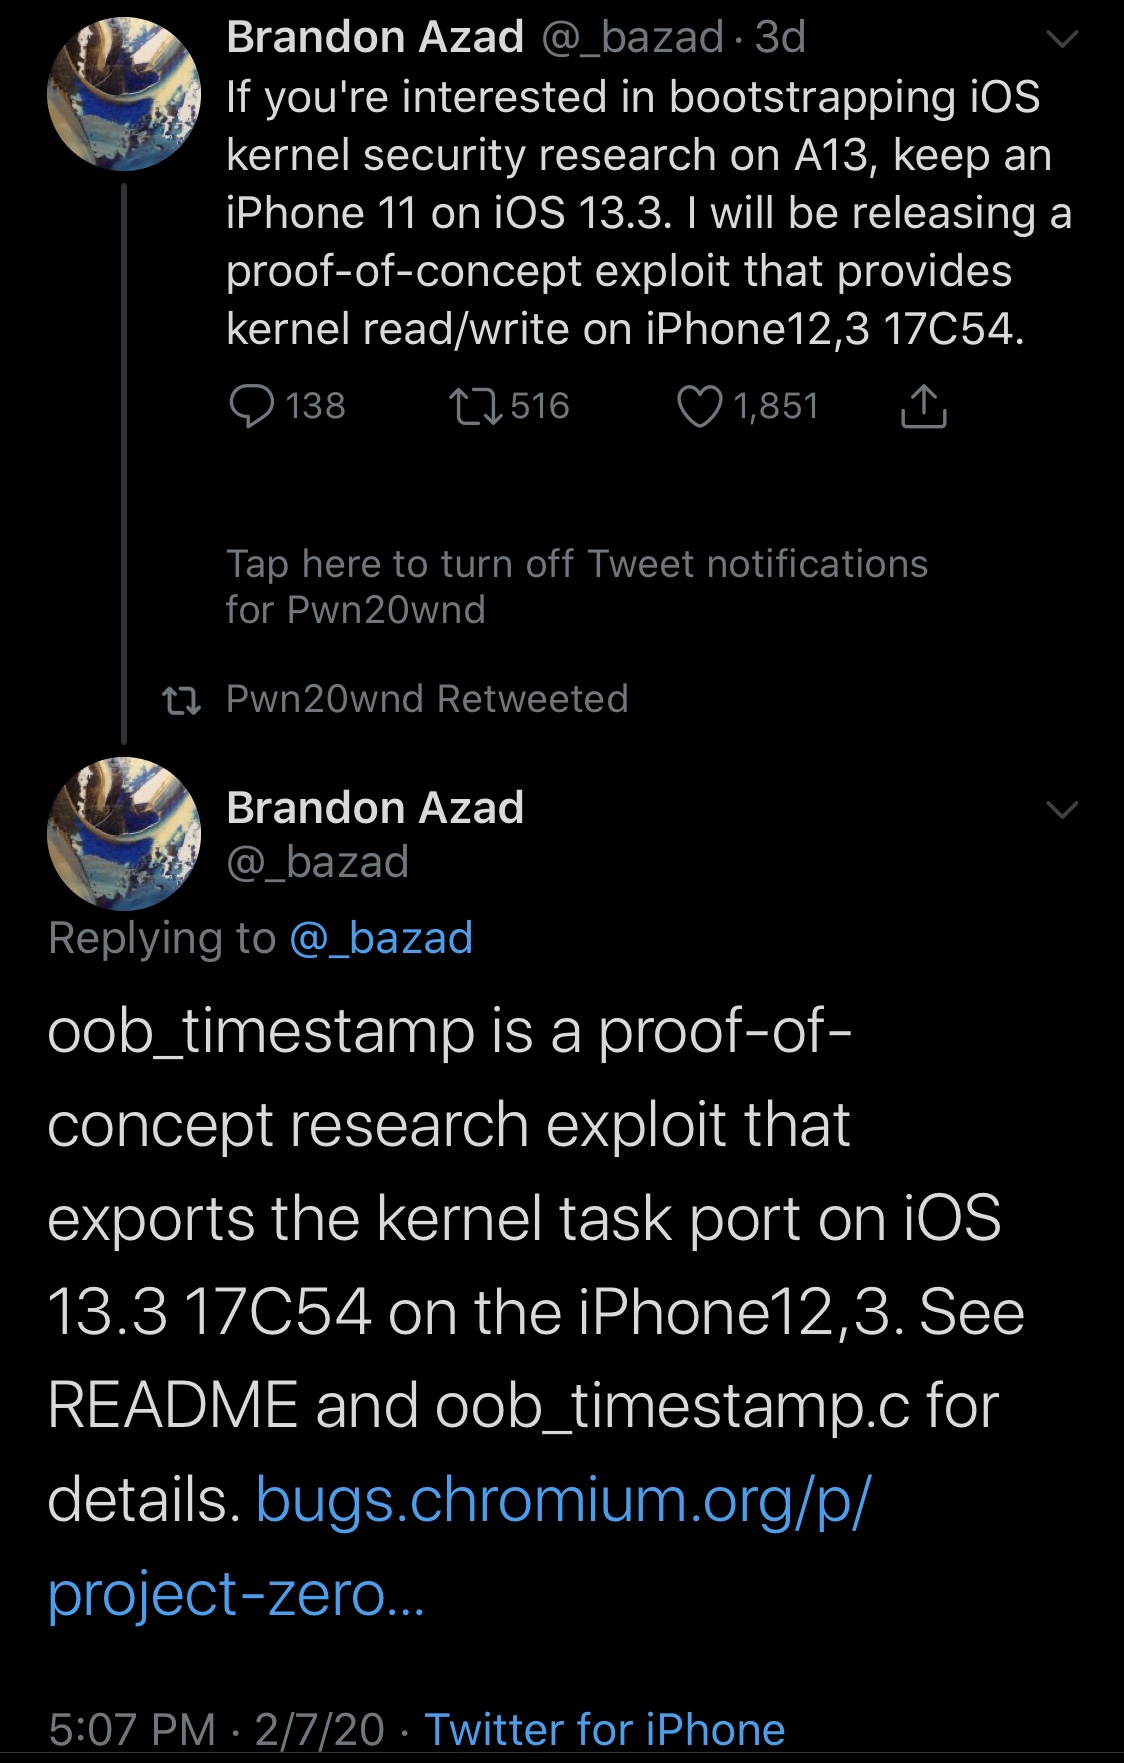 Brandon Azad secara resmi meluncurkan exploit Timestamp OOB untuk iOS 13.0-13.3 3